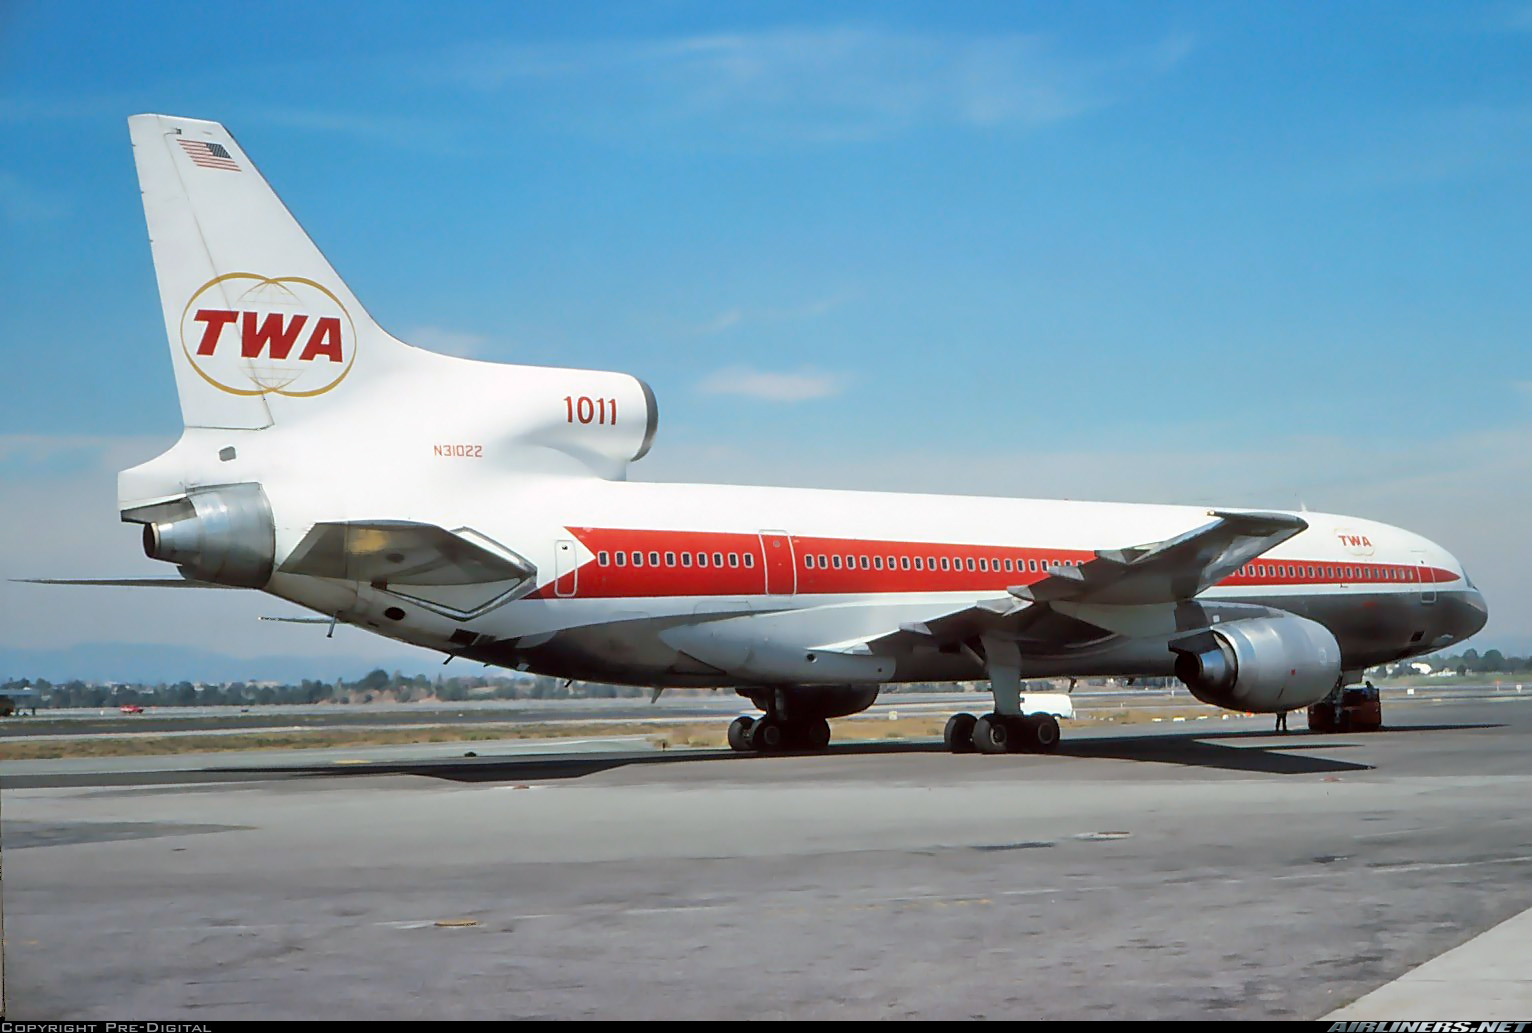 Lockheed L-1011-385-1 TriStar 1 - Trans World Airlines - TWA